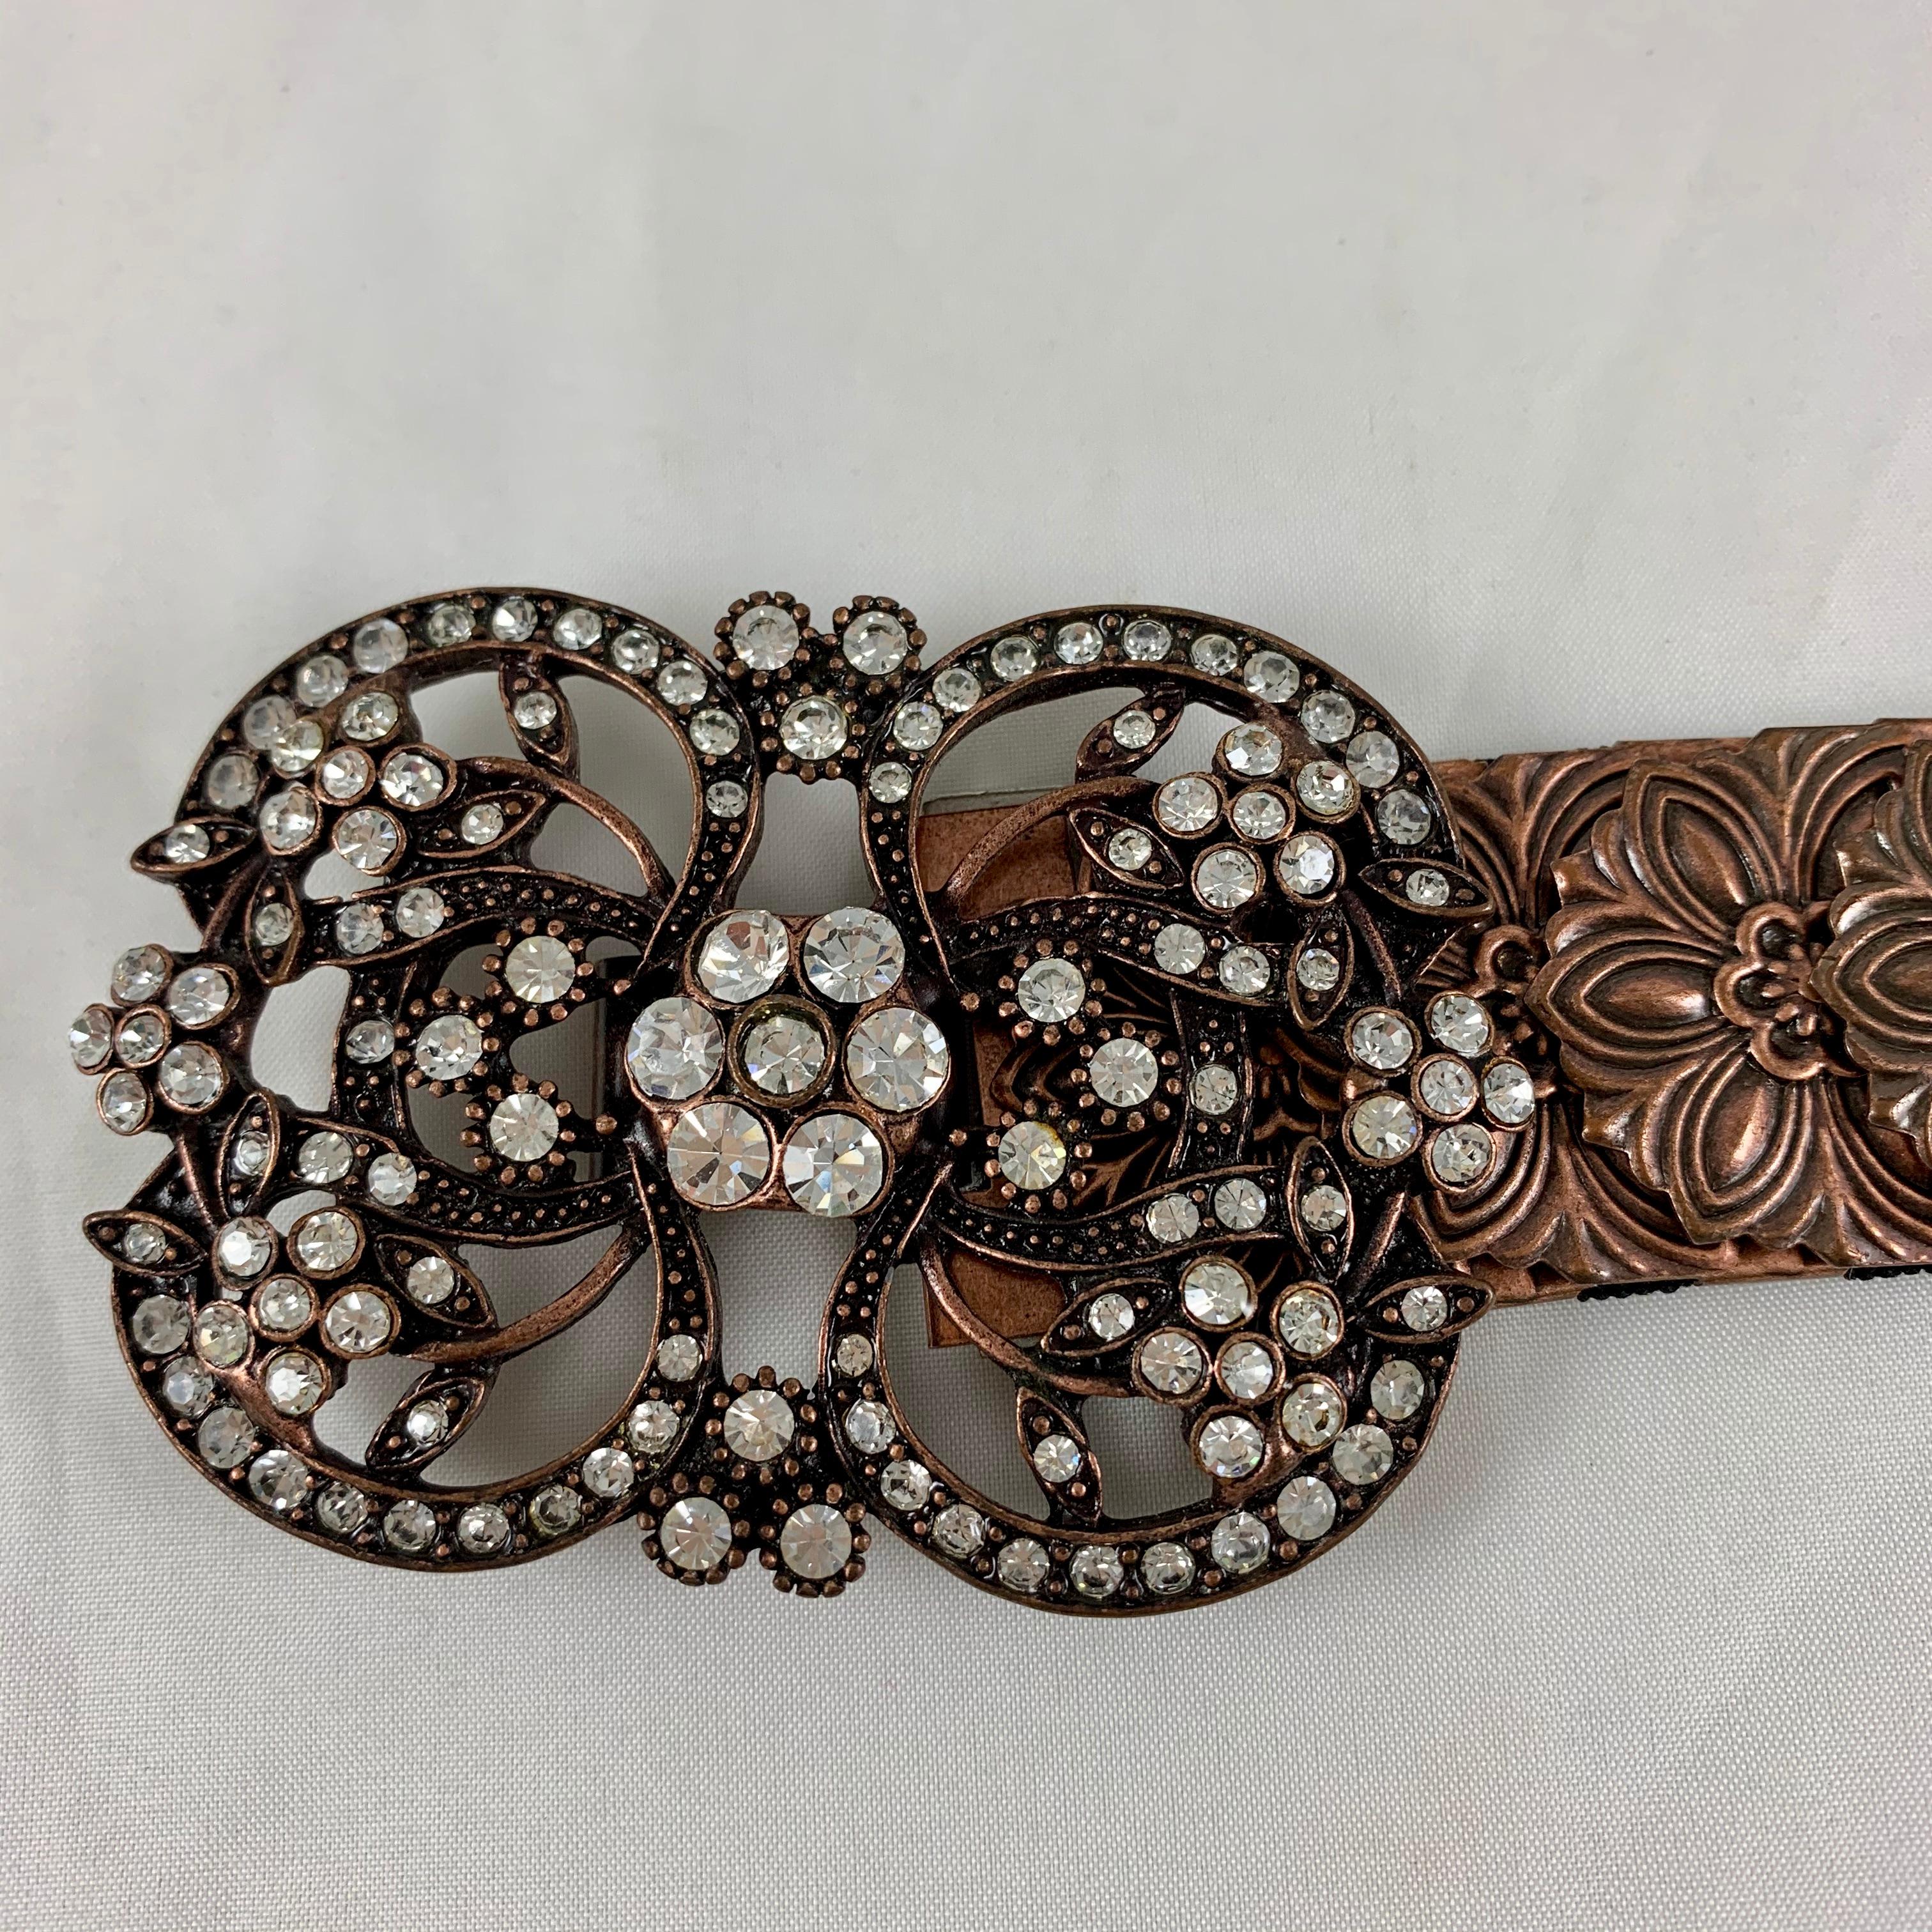 Une ceinture de l'époque des années 1970 faite de maillons en écailles de serpent en métal cuivré avec une boucle médaillon en métal et cristaux. Très bien fait.

Assemblés à la main, les liens présentent un motif floral estampé attaché à un